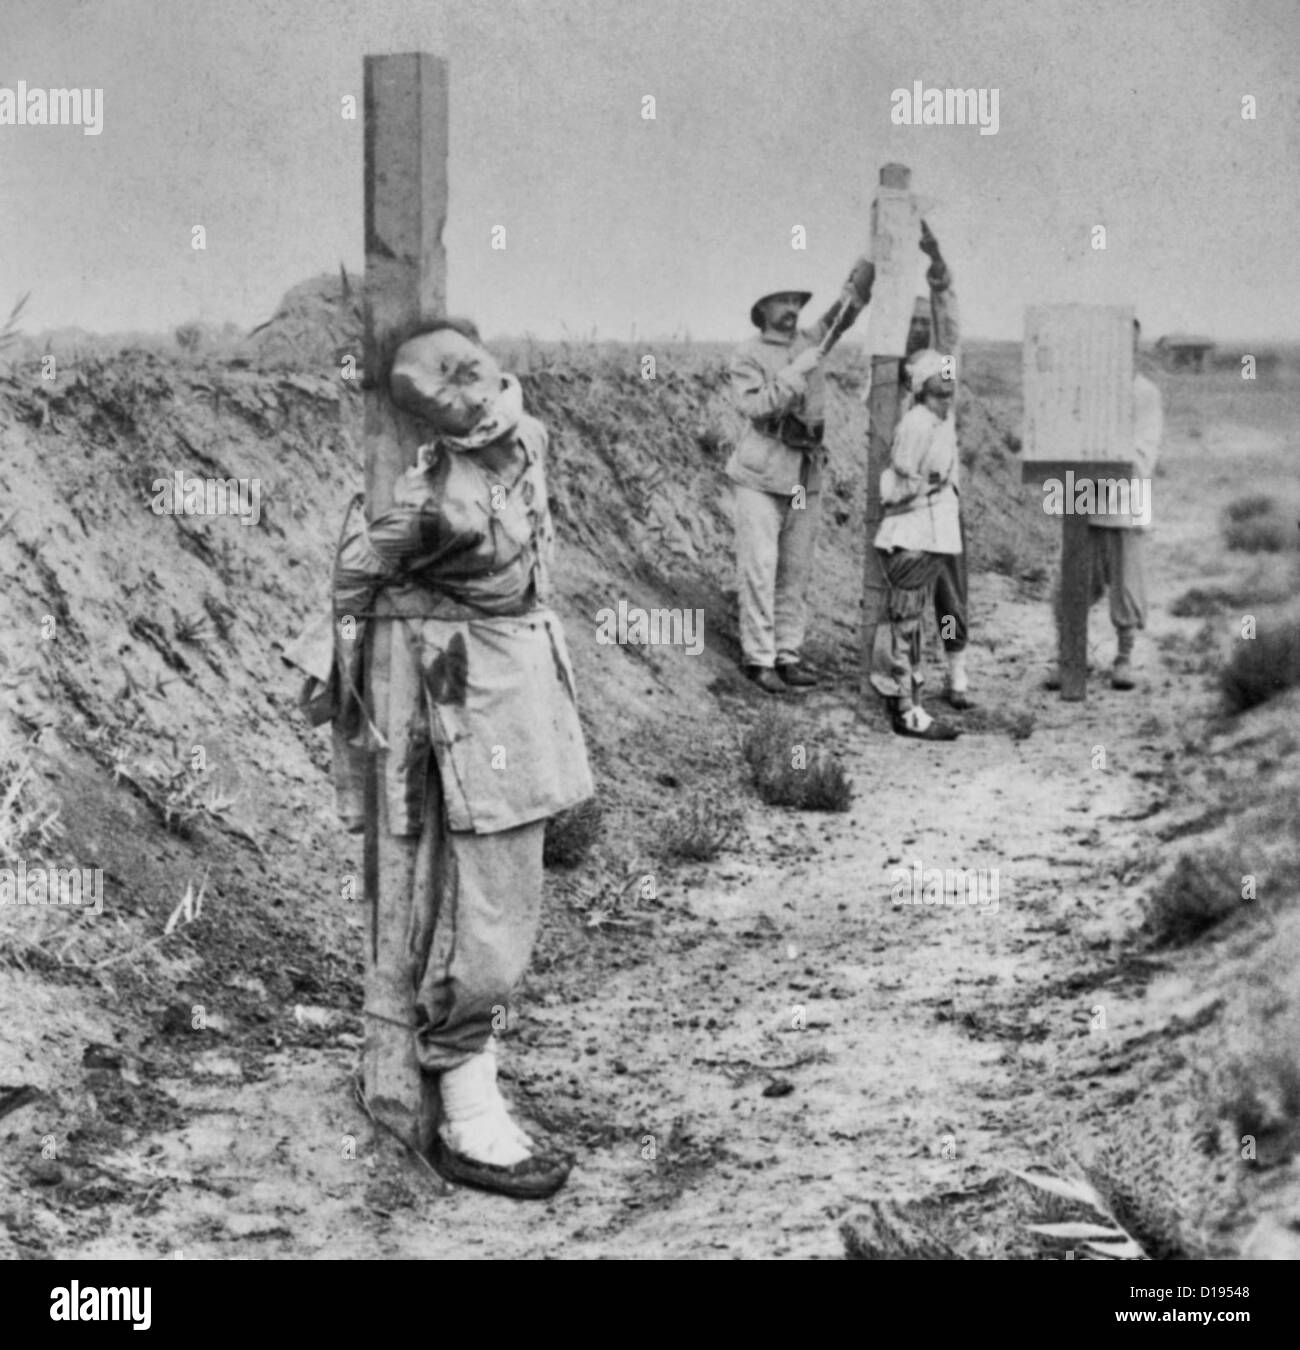 Verbündeten Heck Regierungschefs in Tientsin - chinesische kriminelle sofort nachdem er angeschossen - Soldaten Entsendung Ausführung Verkündigung - China, 1901 Stockfoto